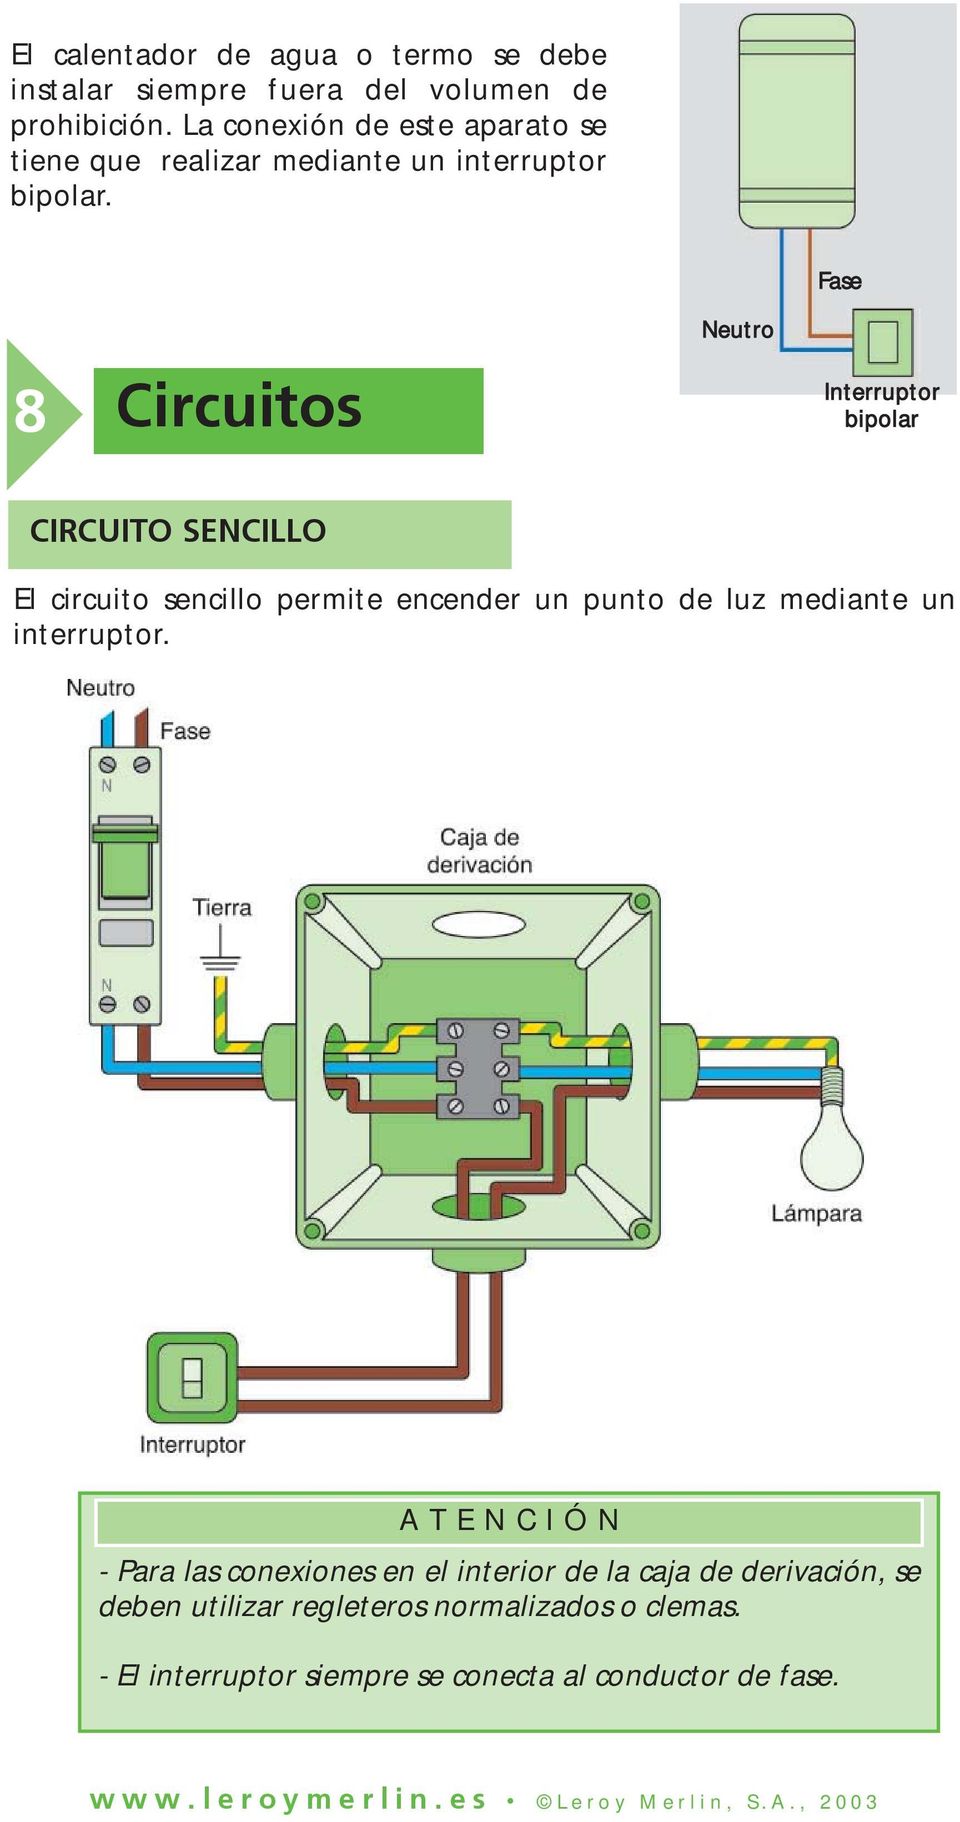 8 Circuitos Neutro Fase Interruptor bipolar CIRCUITO SENCILLO El circuito sencillo permite encender un punto de luz